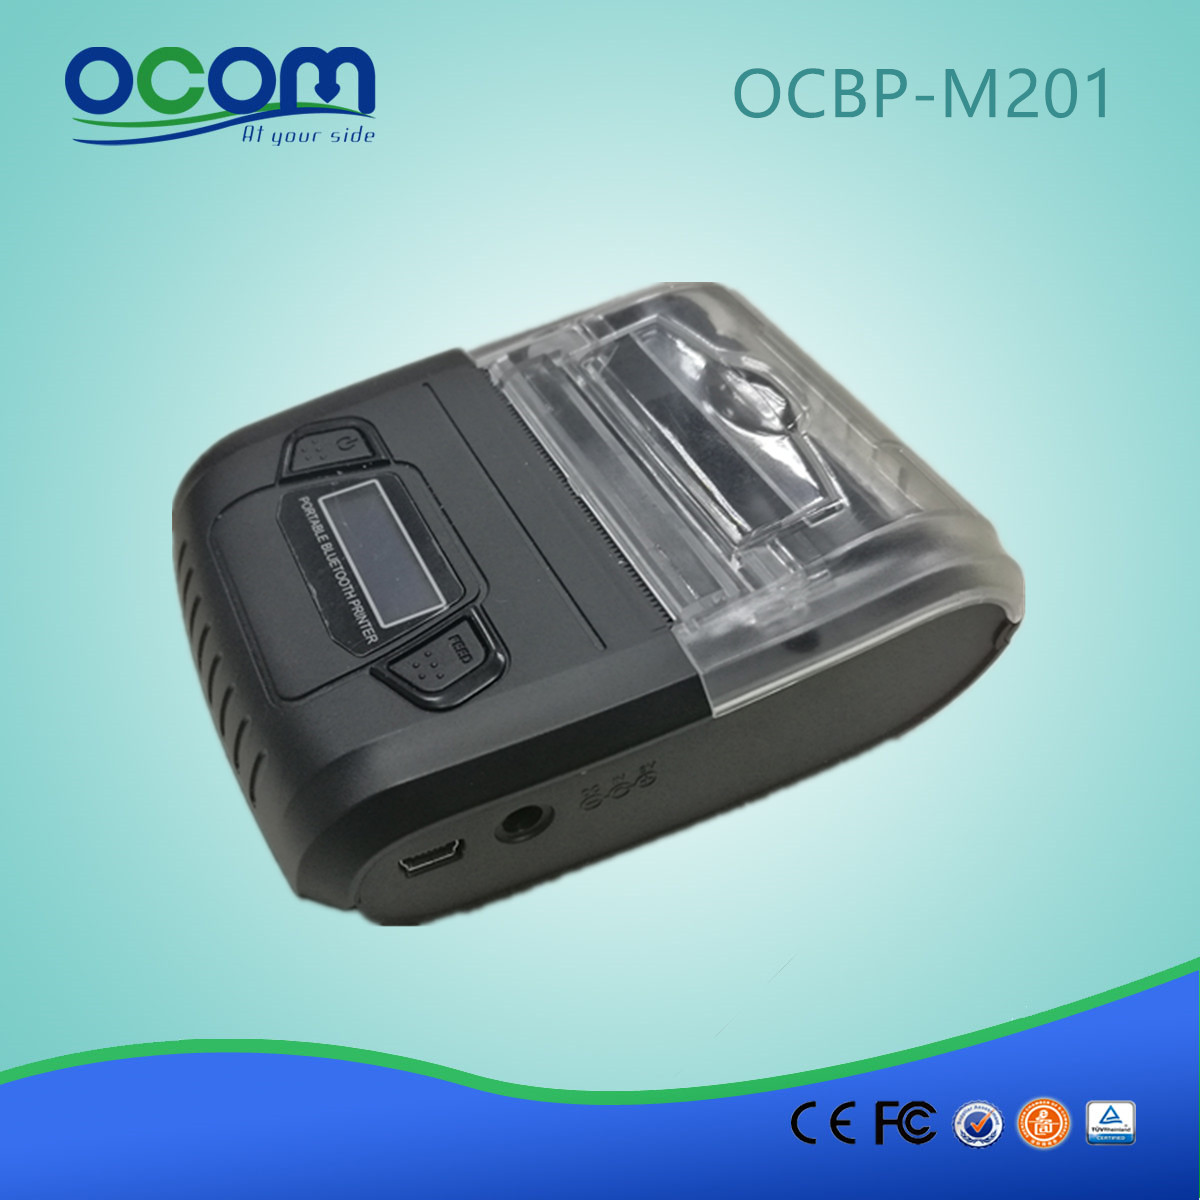 (OCBP -M201) Chiny Tanie 58mm mini drukarka etykiet termicznych Bluetooth